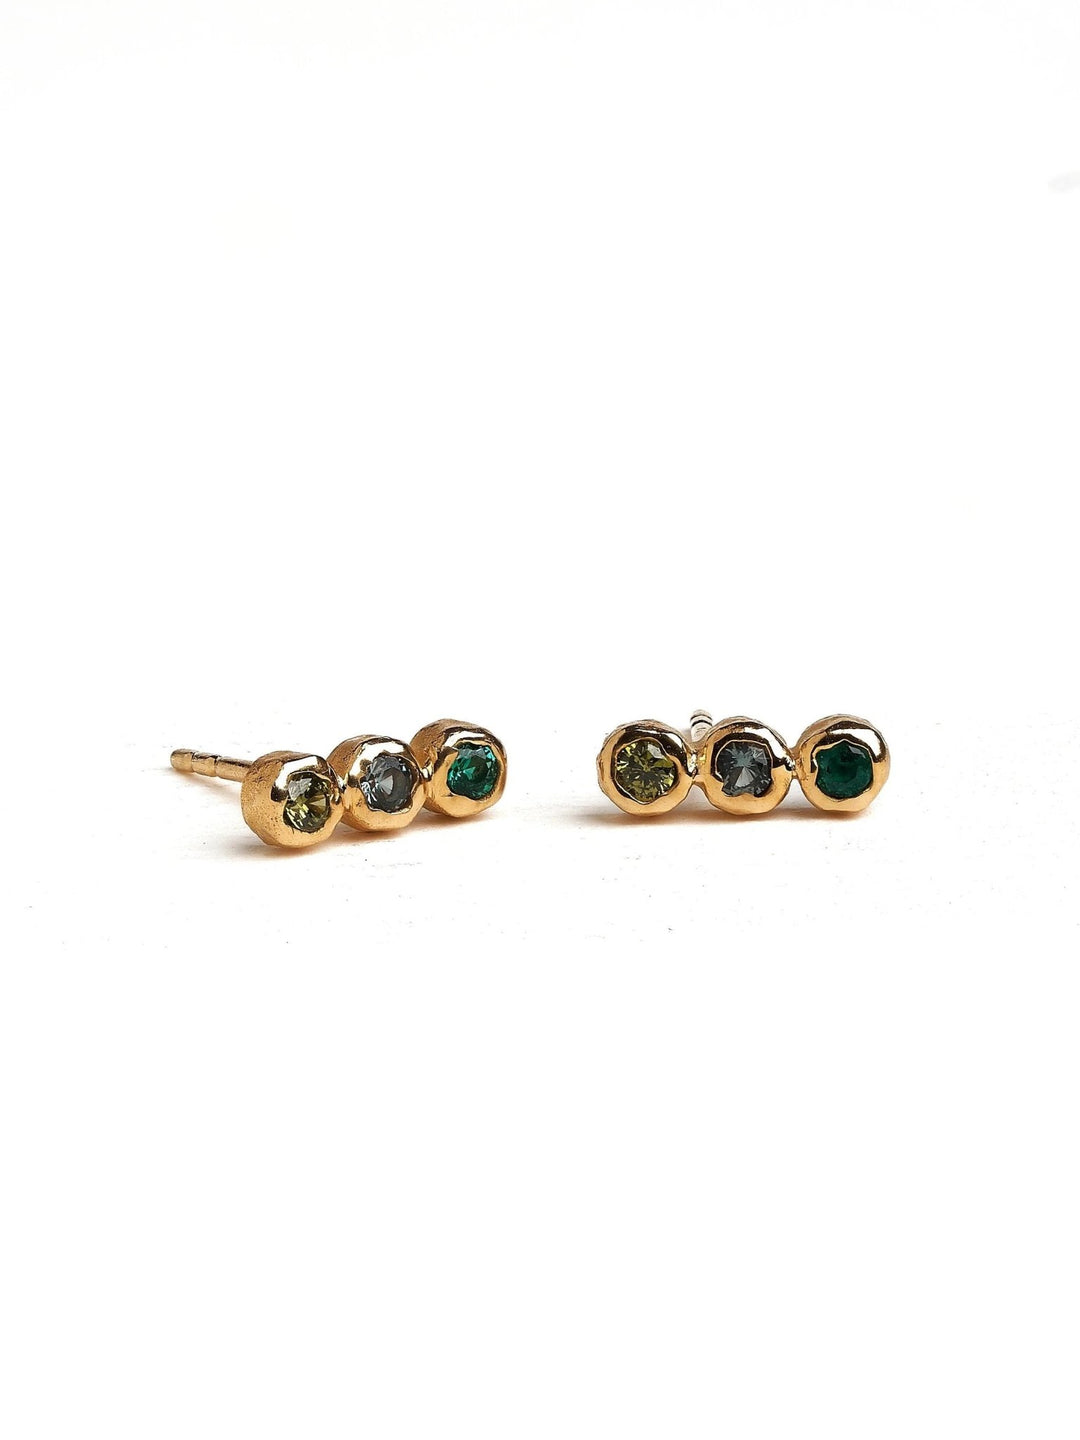 Alior Gold Stud Earrings - PINKSbirthstone earringscool earringsLunai Jewelry